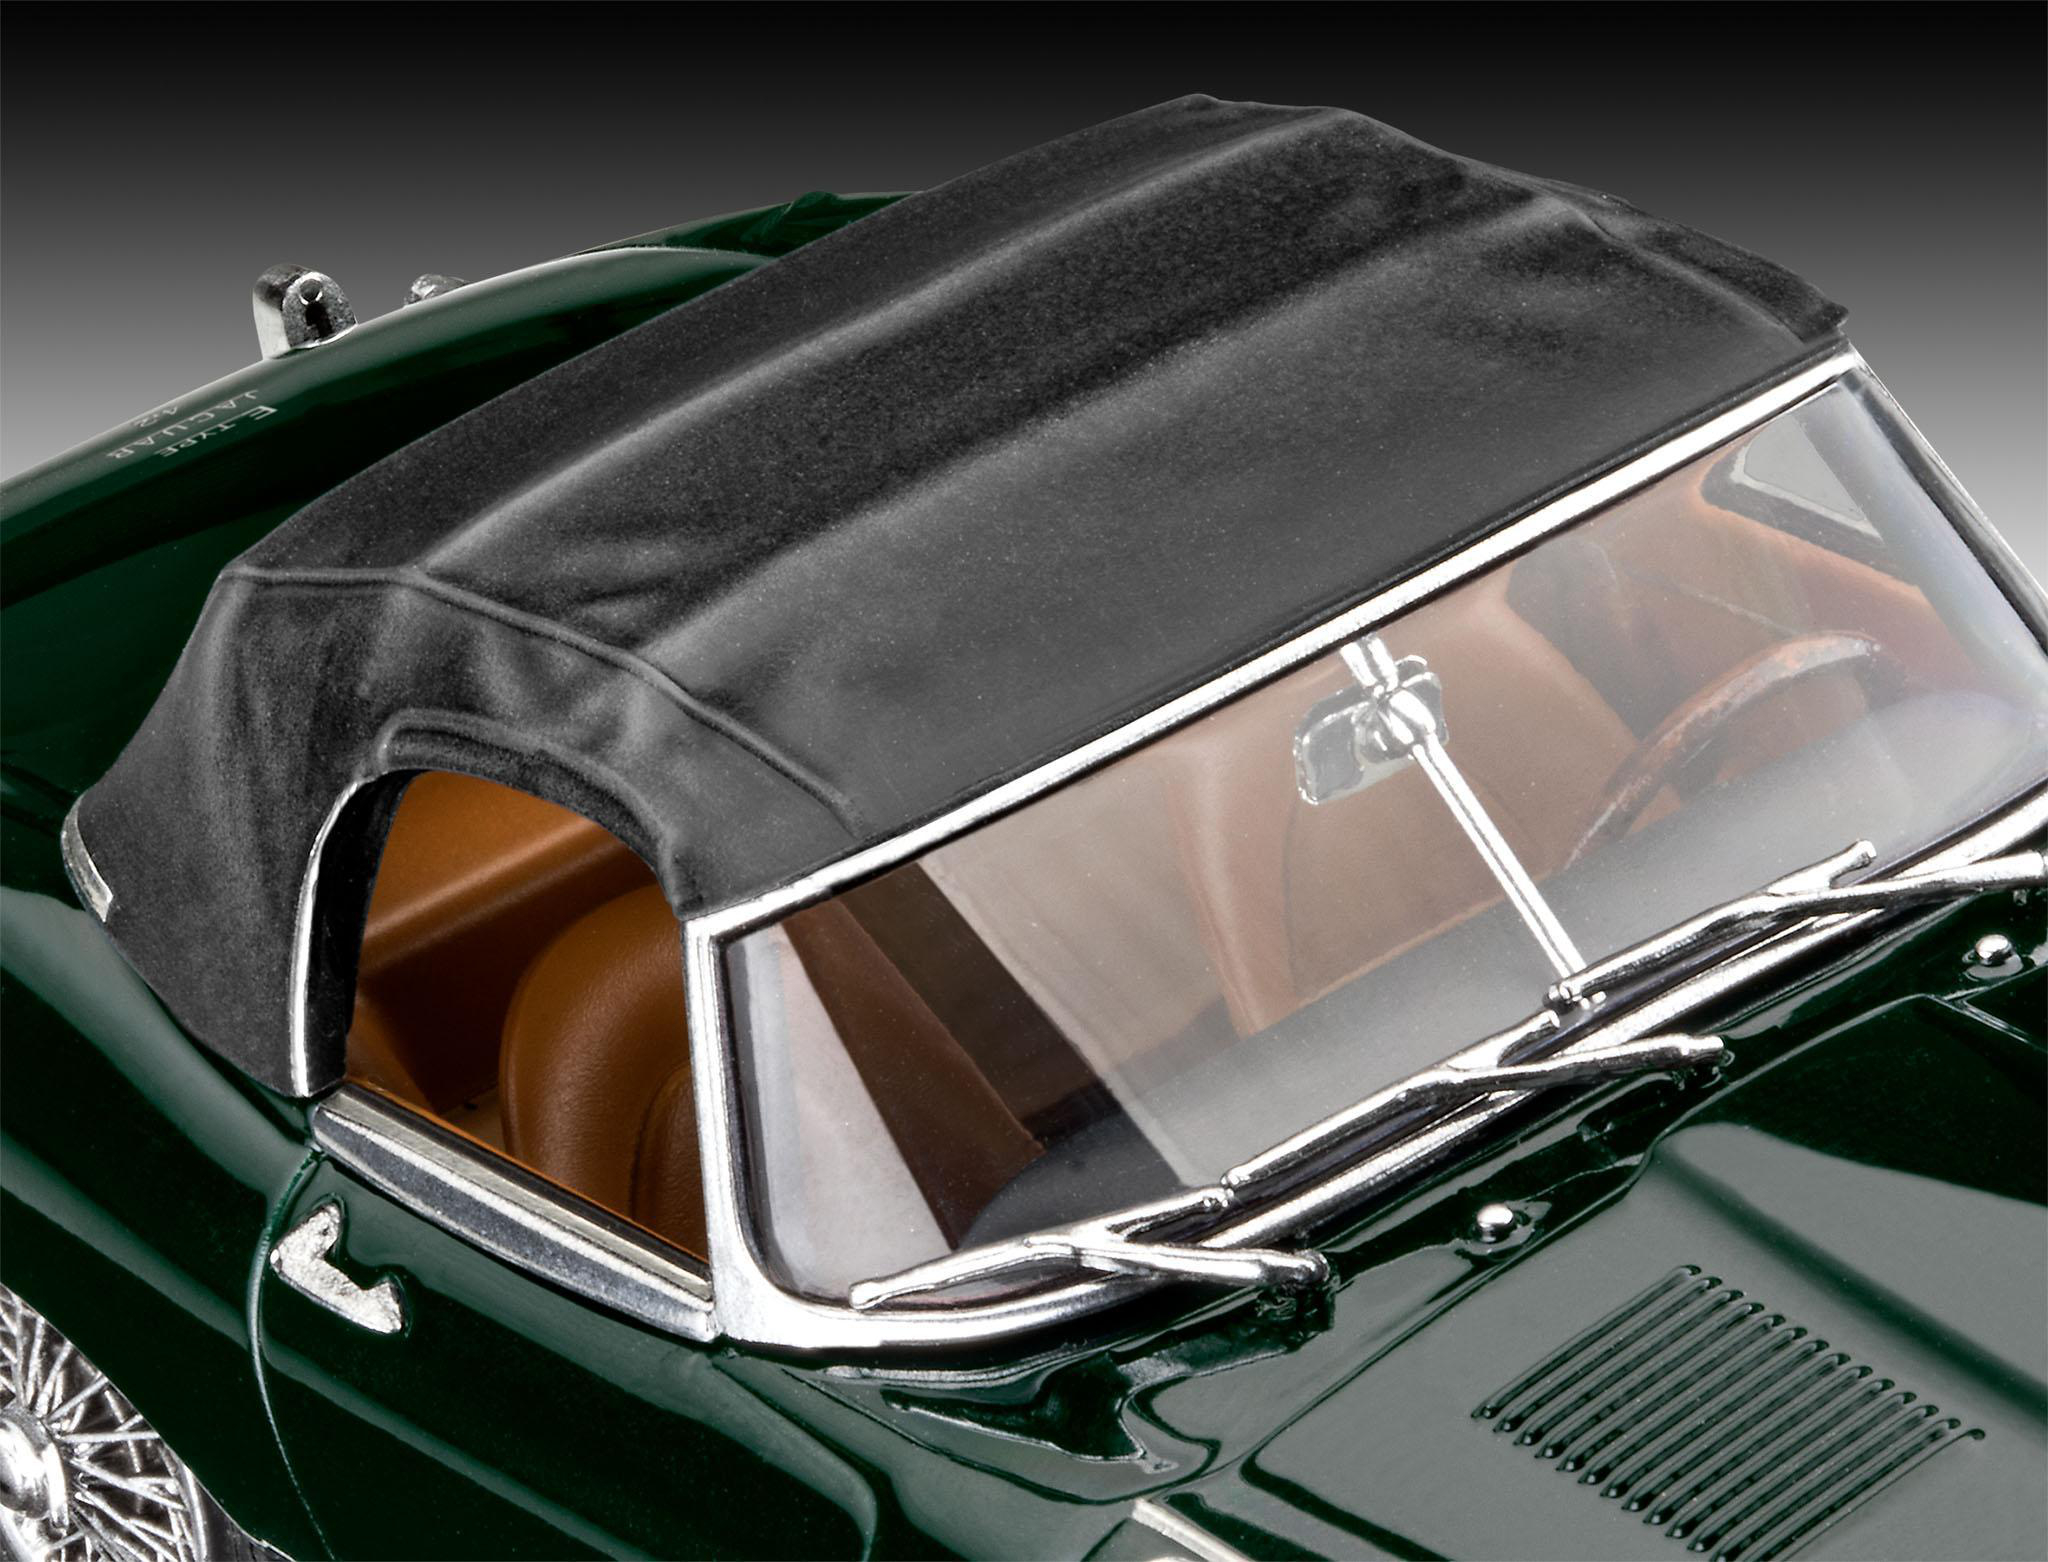 E-Type Mehrfarbig Jaguar Modellbausatz, REVELL Roadster